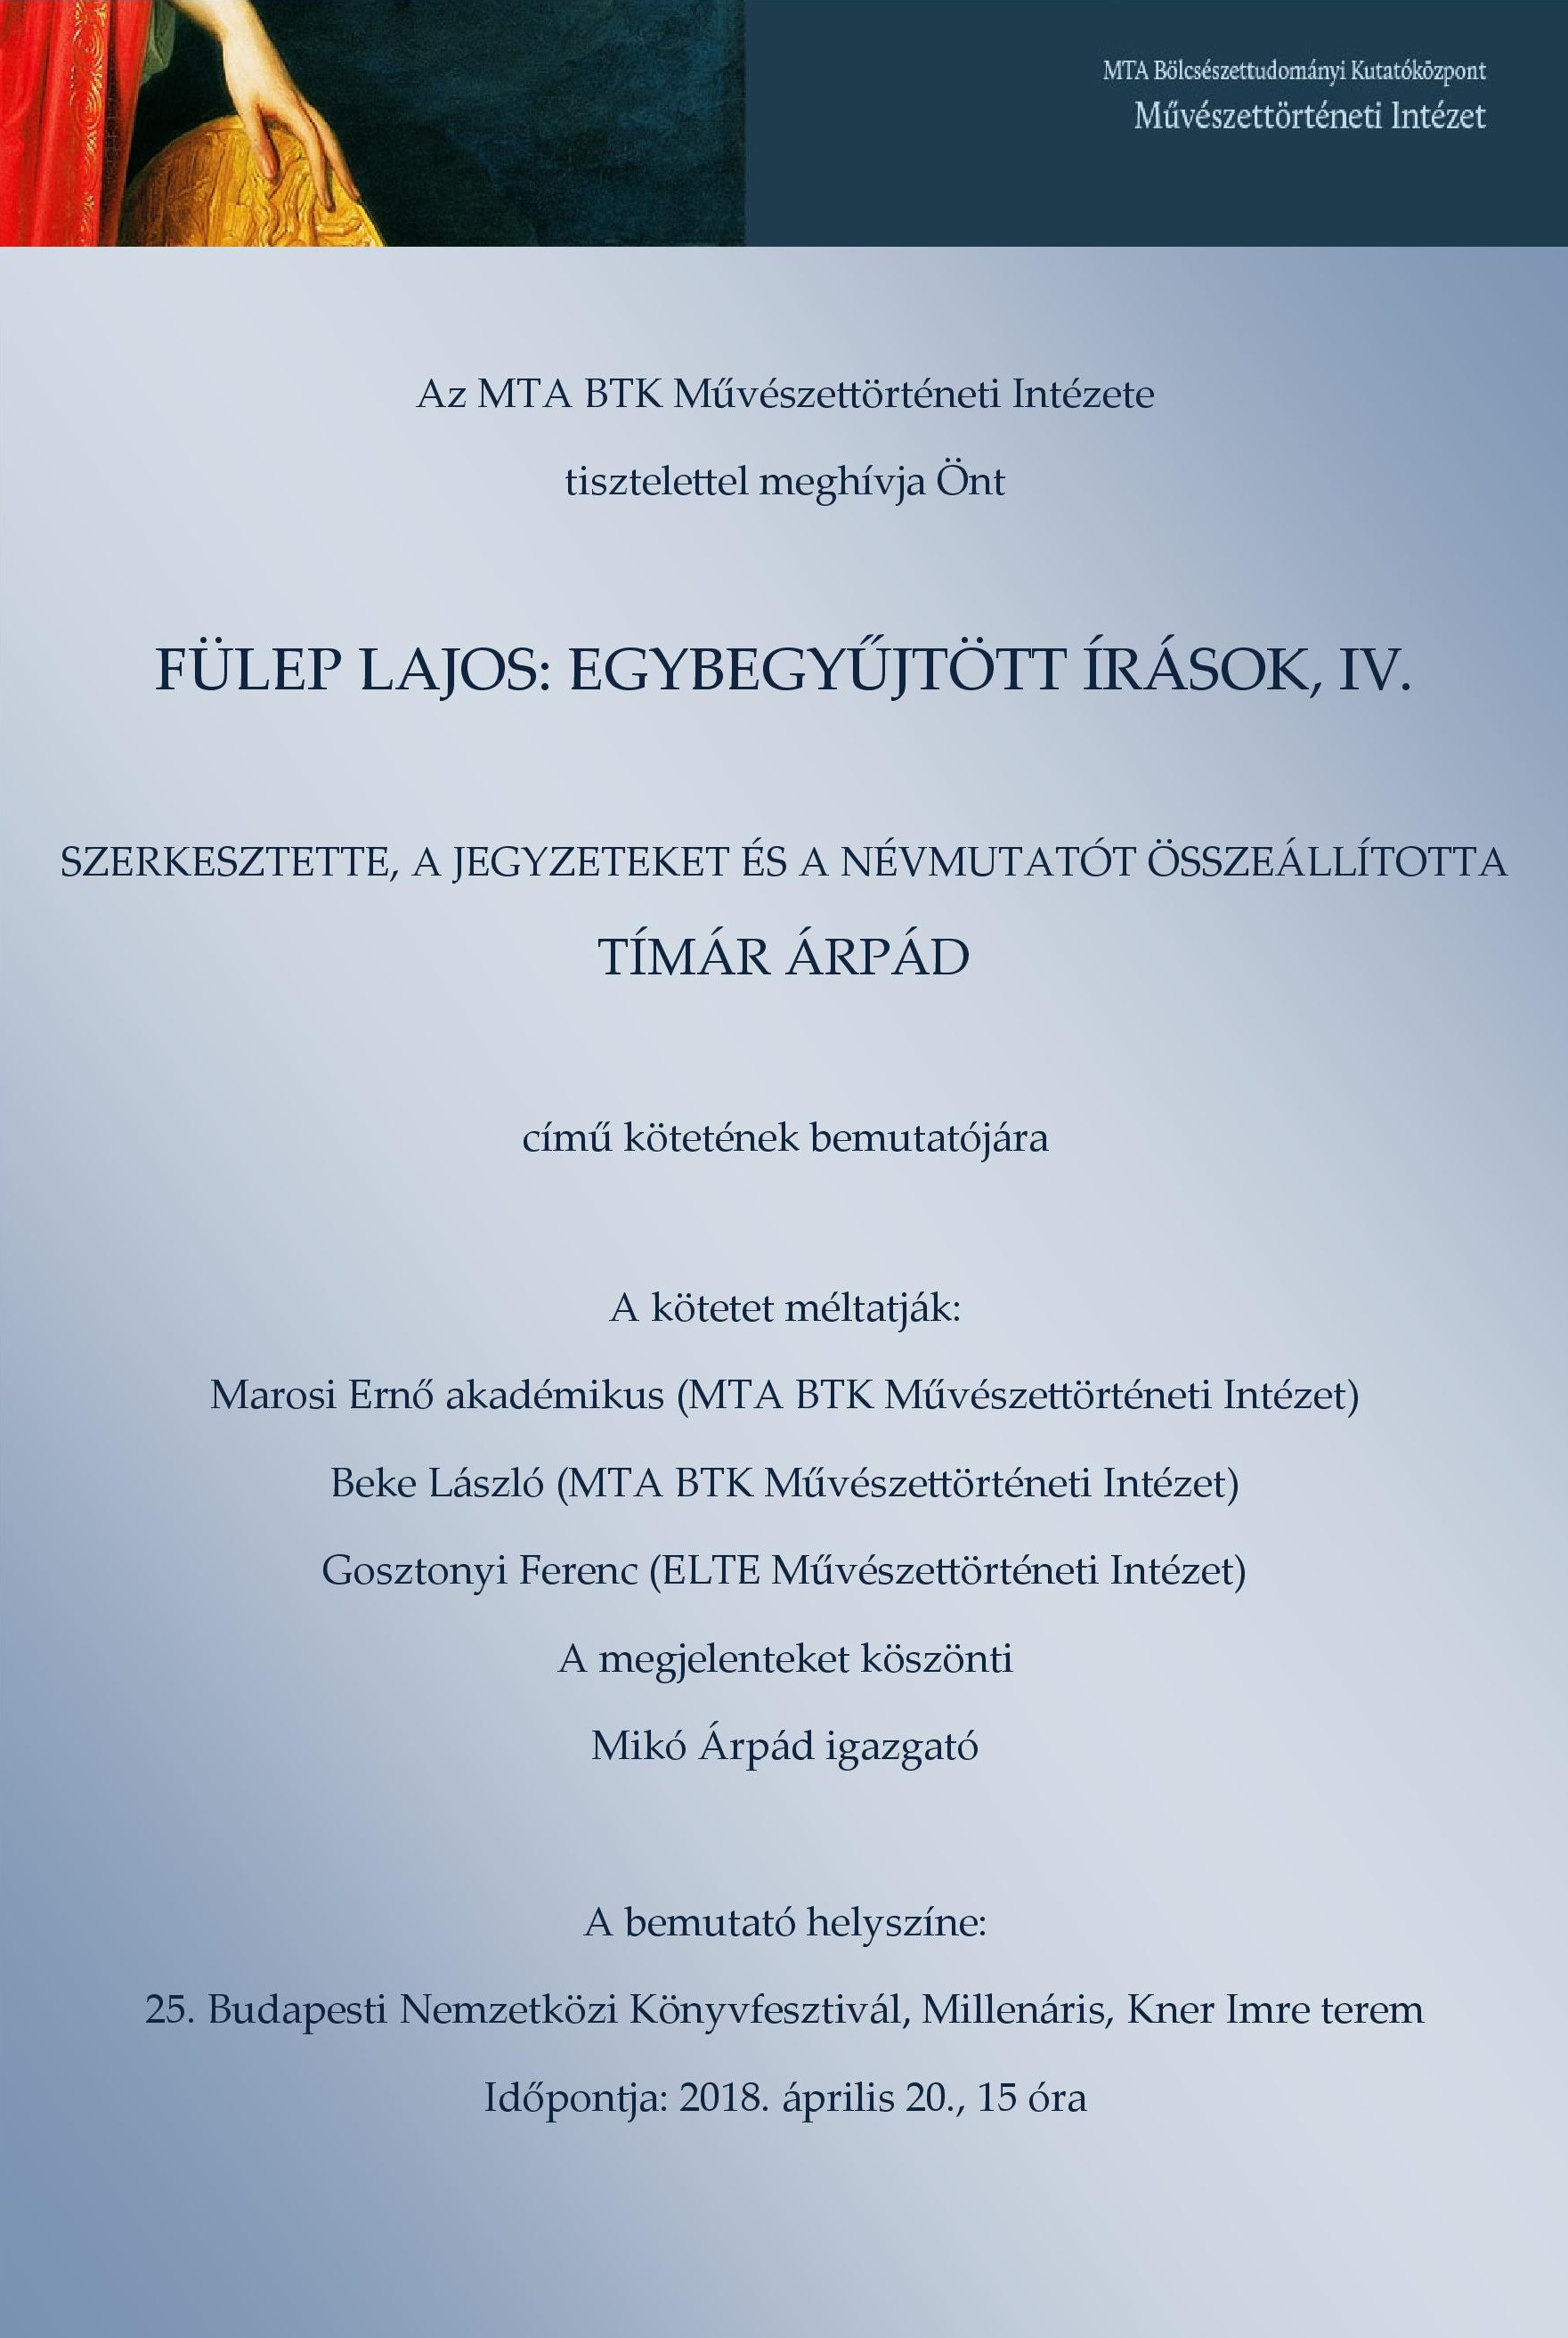 Könyvbemutató:Fülep Lajos: egybegyűjtött írások, IV.